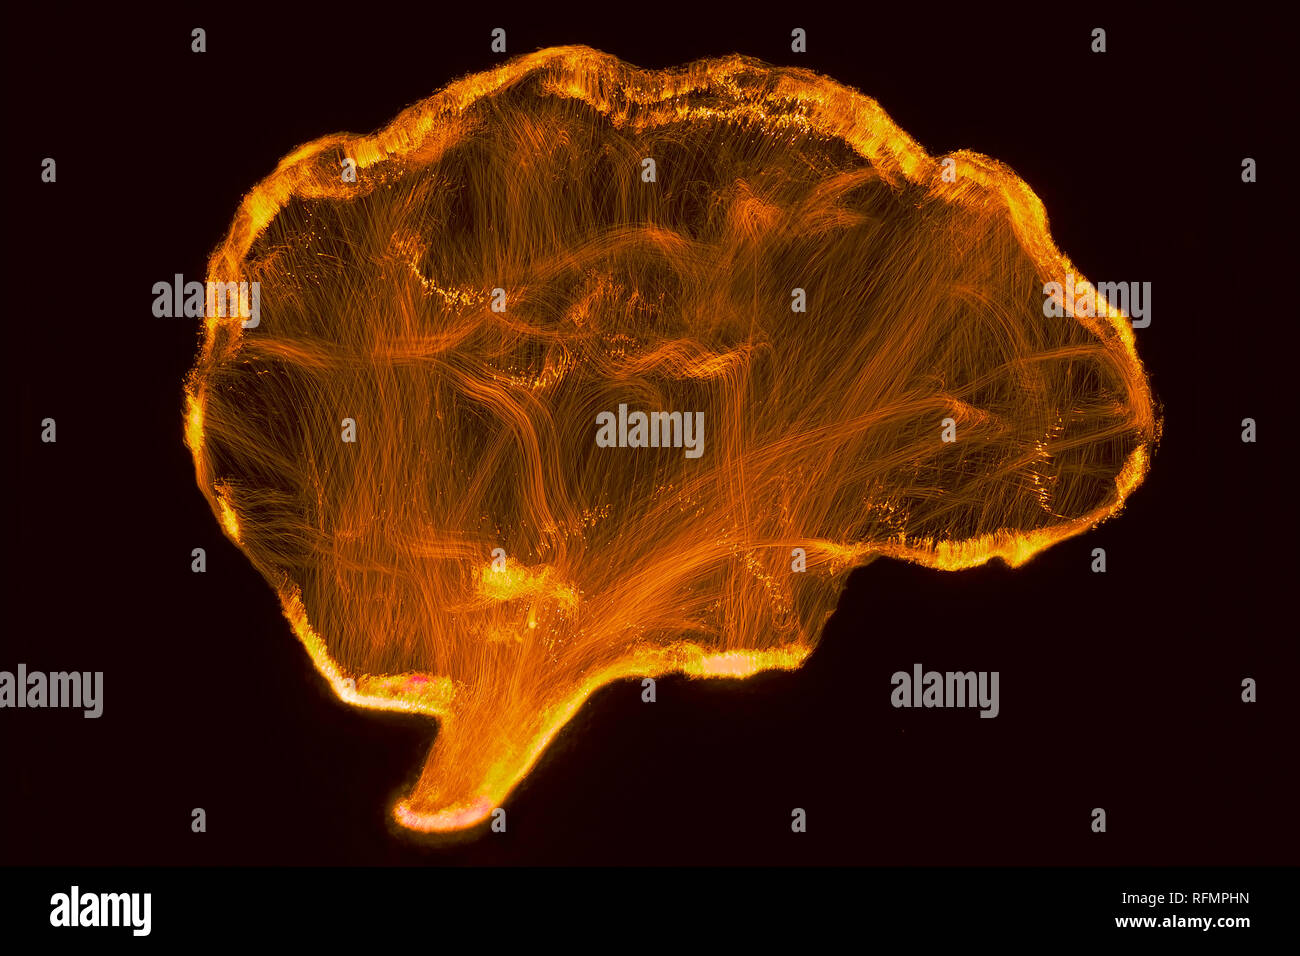 Rappresentazione del cervello umano mediante luce tecnica di pittura Foto Stock